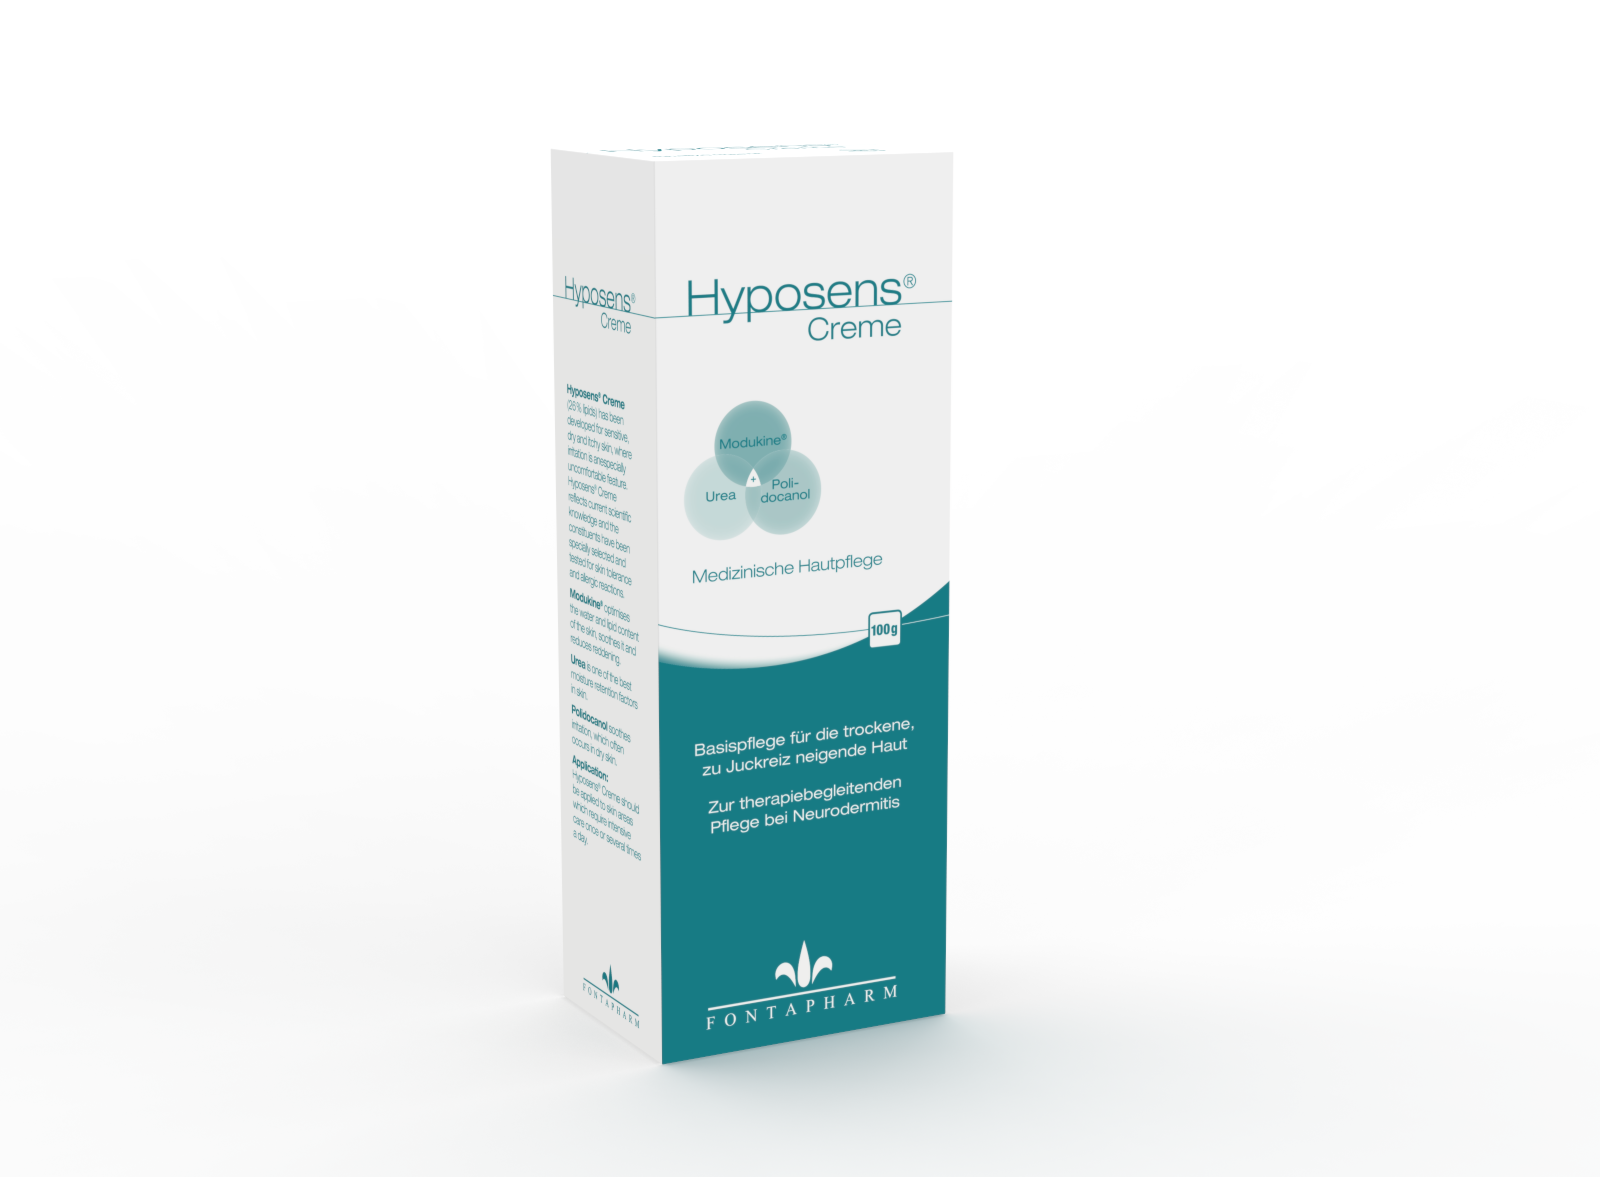 Hyposens, die Creme für die extrem trockene, juckende Haut und Neurodermitis mit 0,5% Modukine, 2,5% Polidocanol und 5% Urea